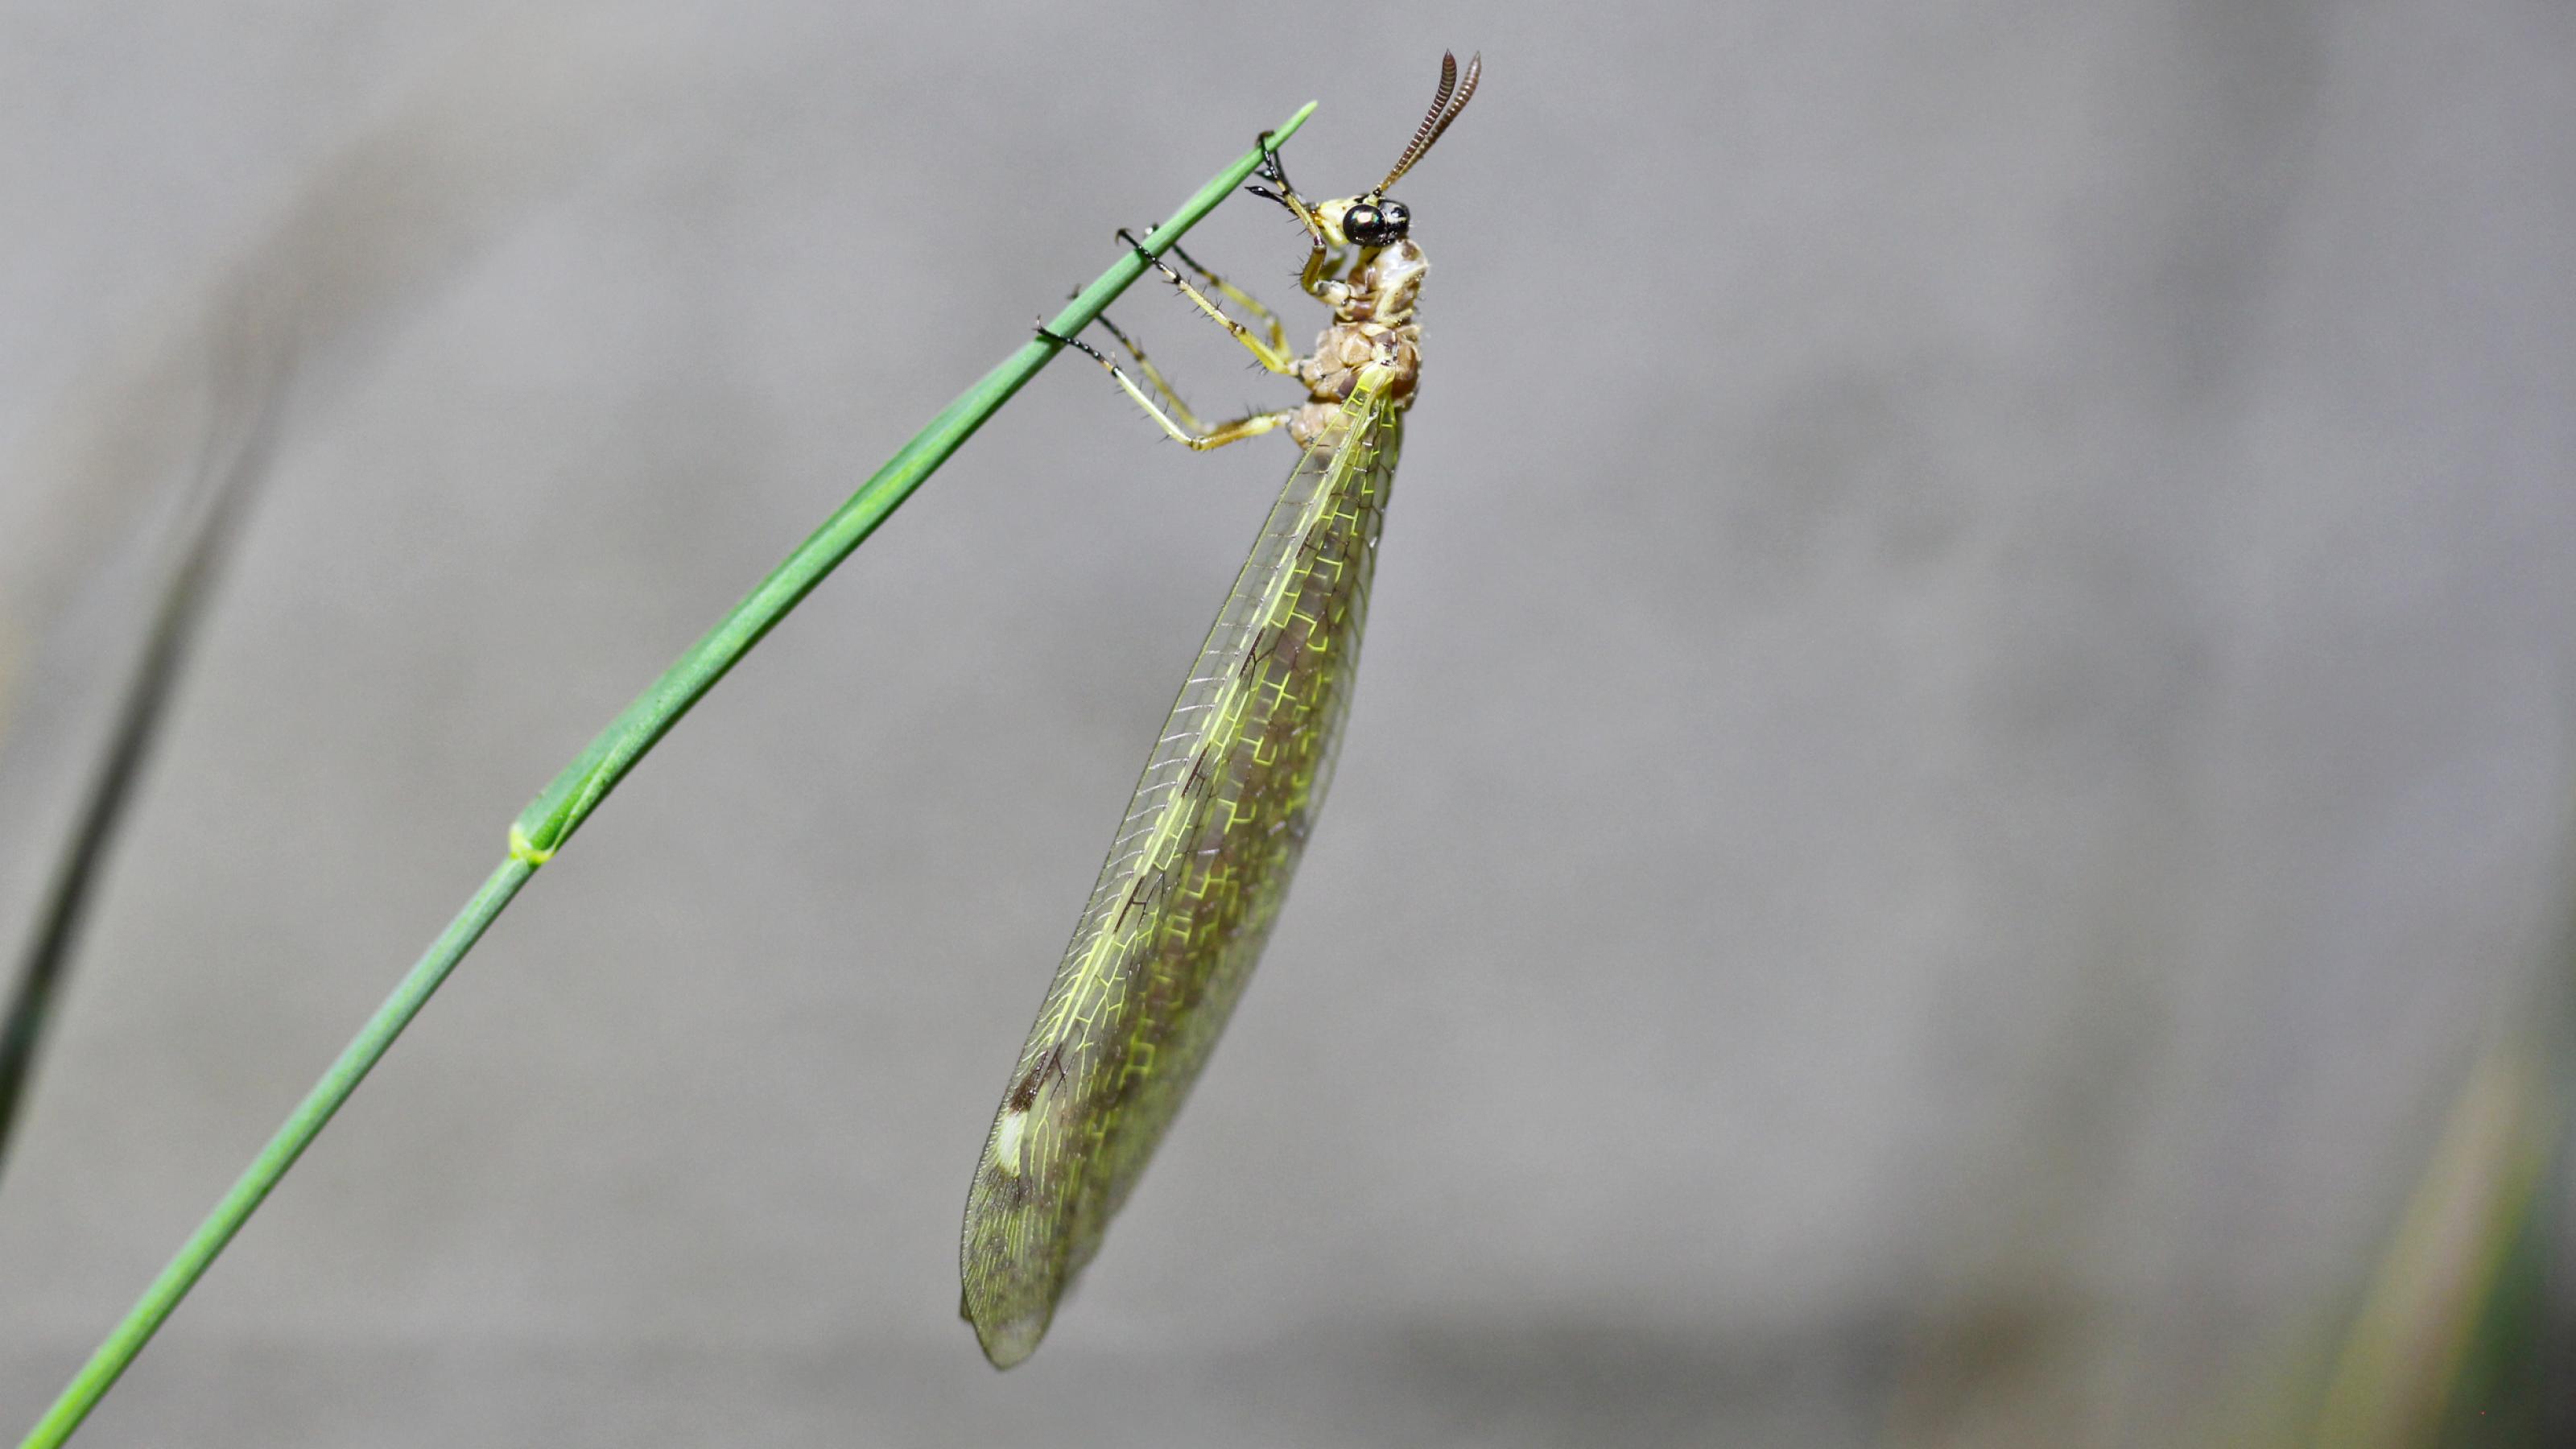 Ein bräunliches Insekt mit großen, dunklen Augen klammert sich mit sechs Beinen an einen grünen Grashalm. Die Flügel sind voll entfaltet.